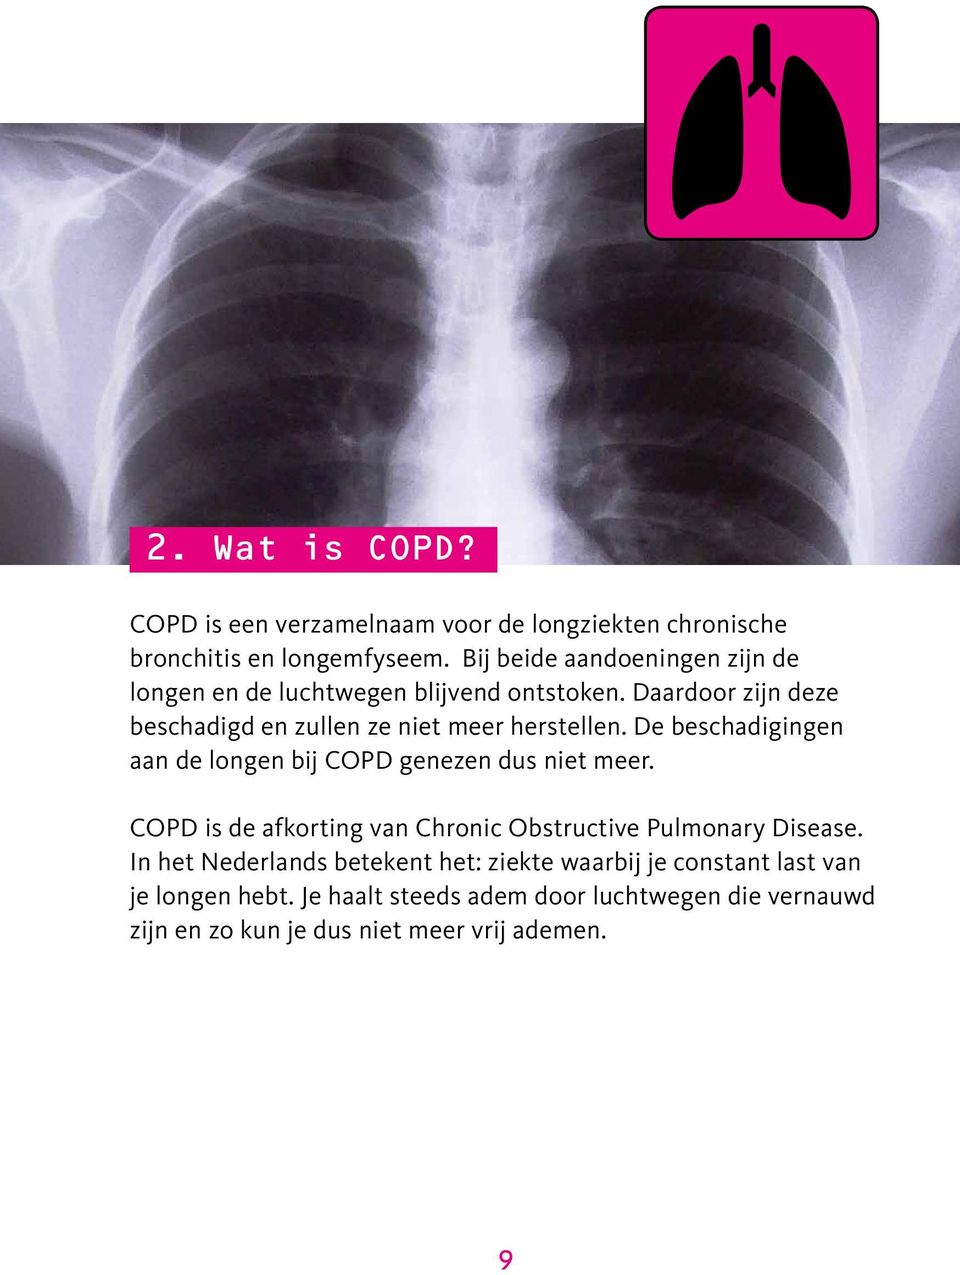 Daardoor zijn deze beschadigd en zullen ze niet meer herstellen. De beschadigingen aan de longen bij COPD genezen dus niet meer.